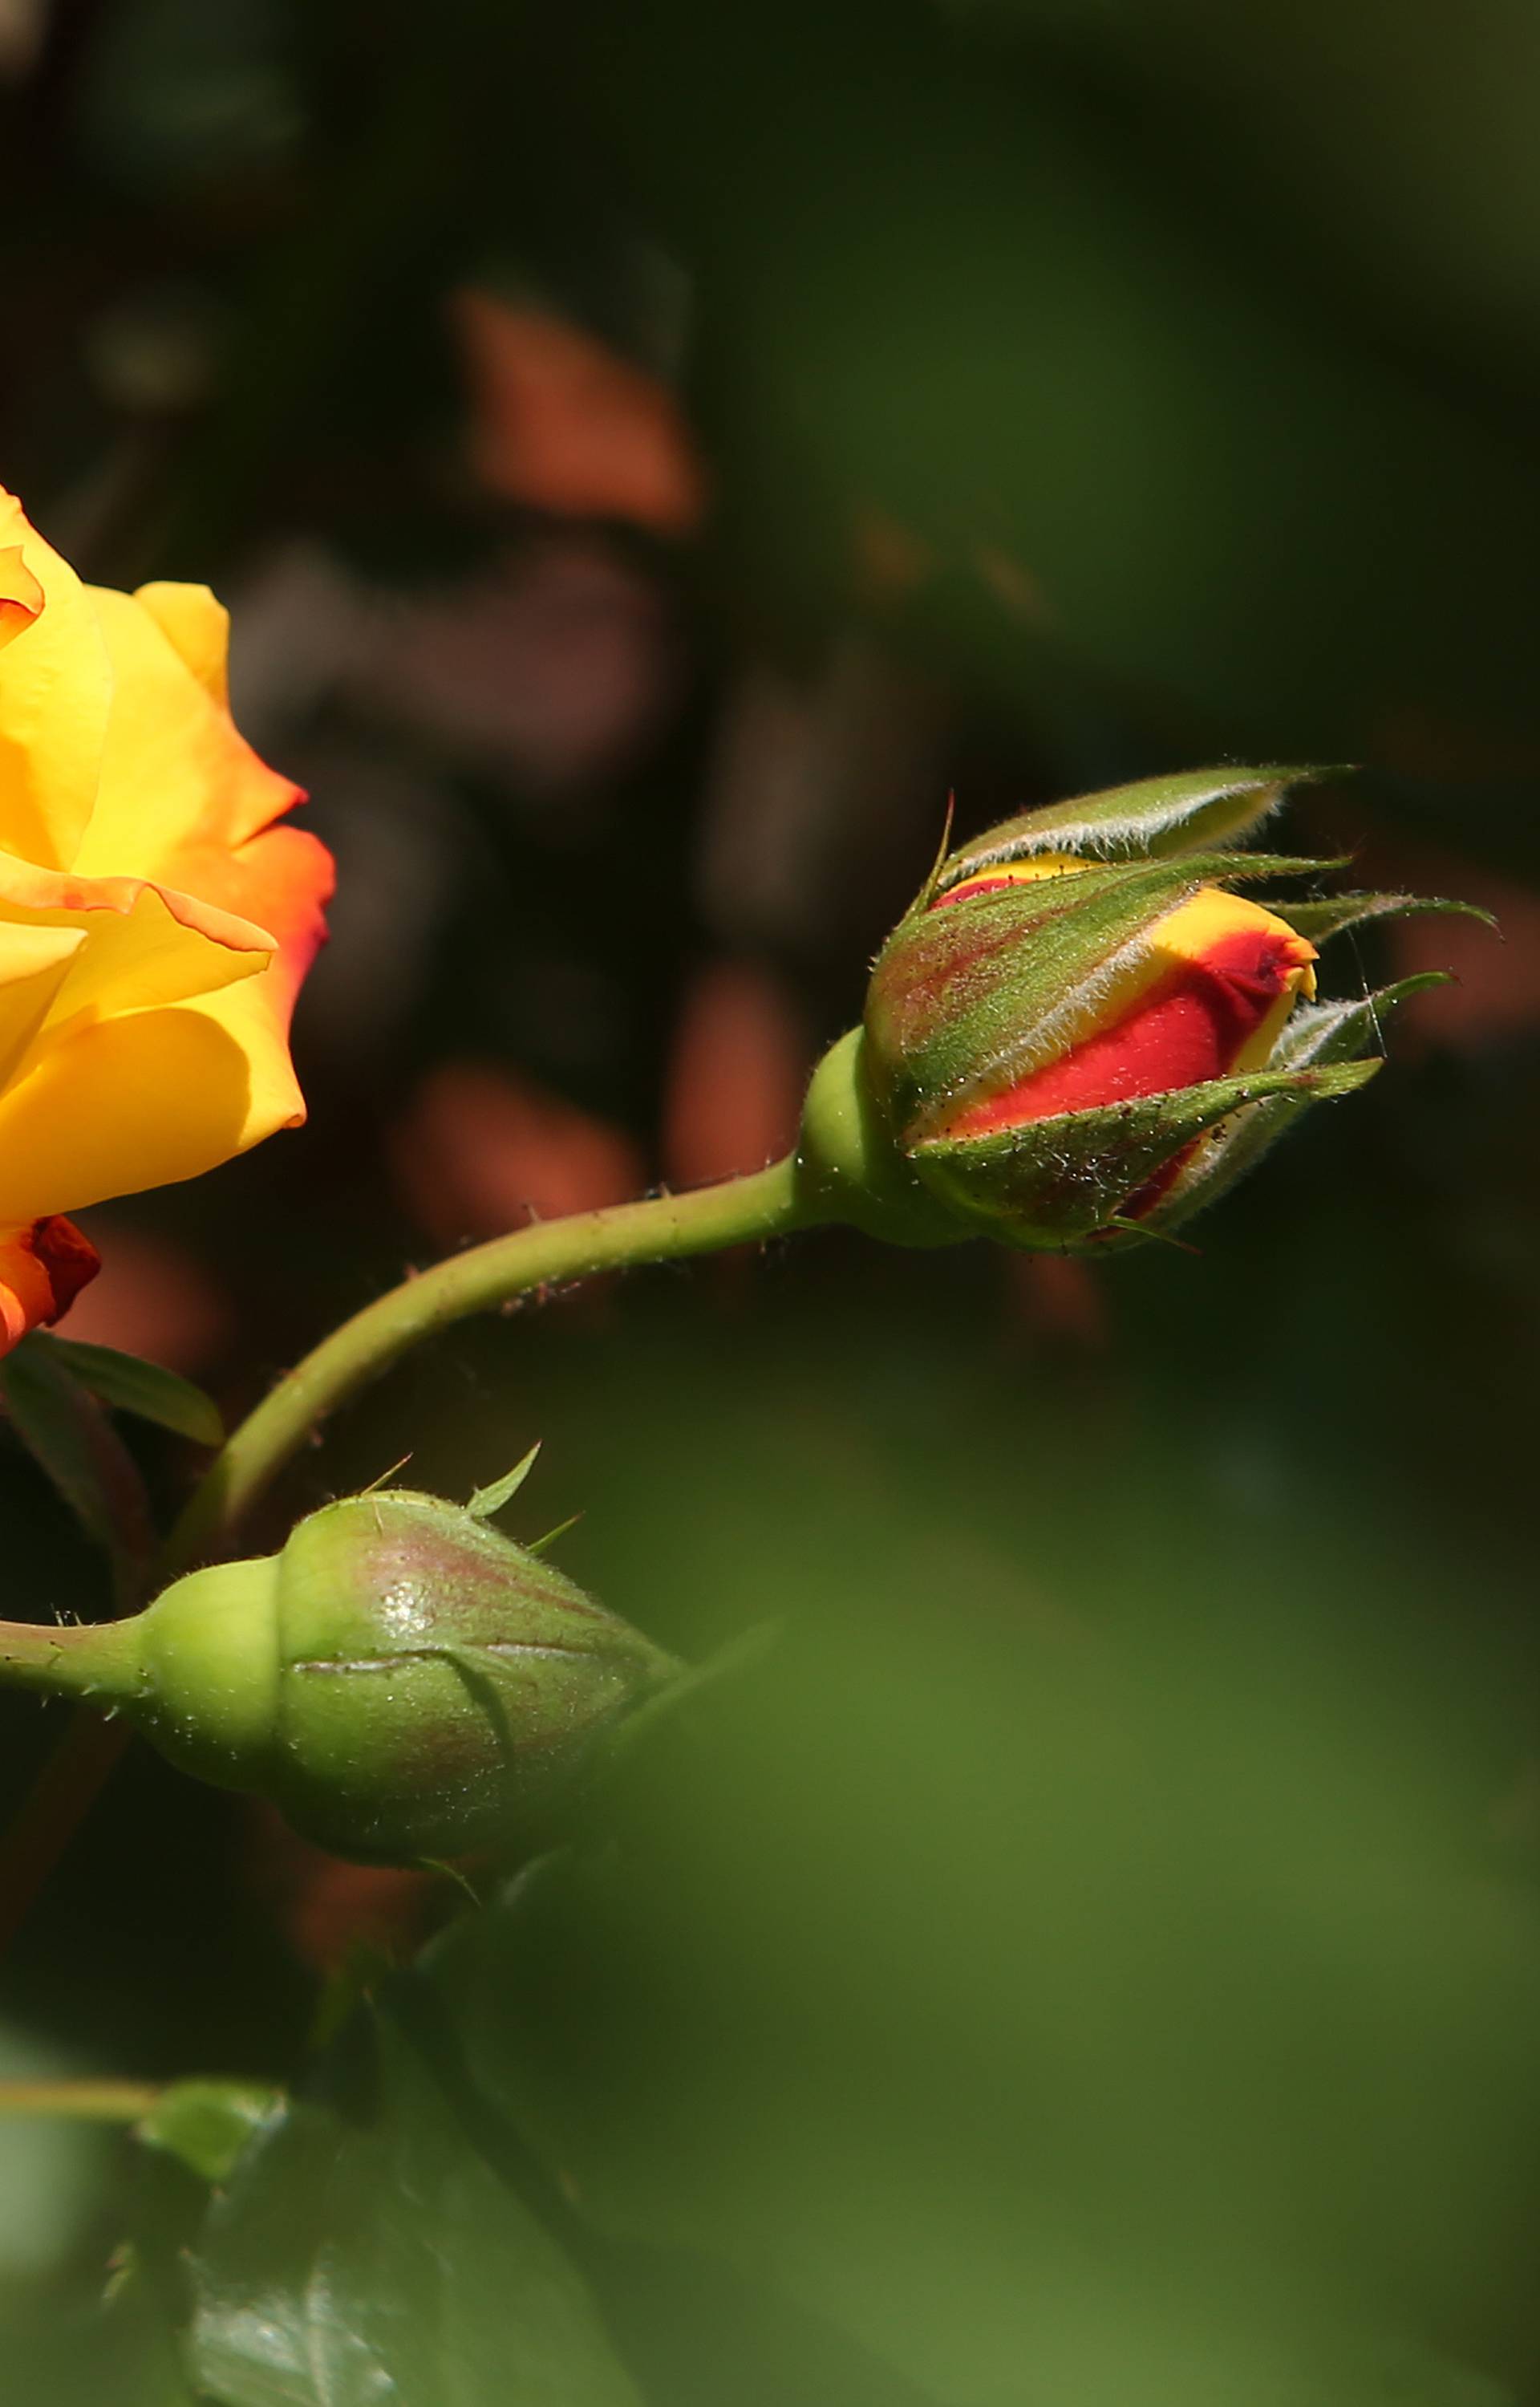 Ako namjeravate danas nekome pokloniti ružu pazite na odabir, nema svaka boja isto značenje